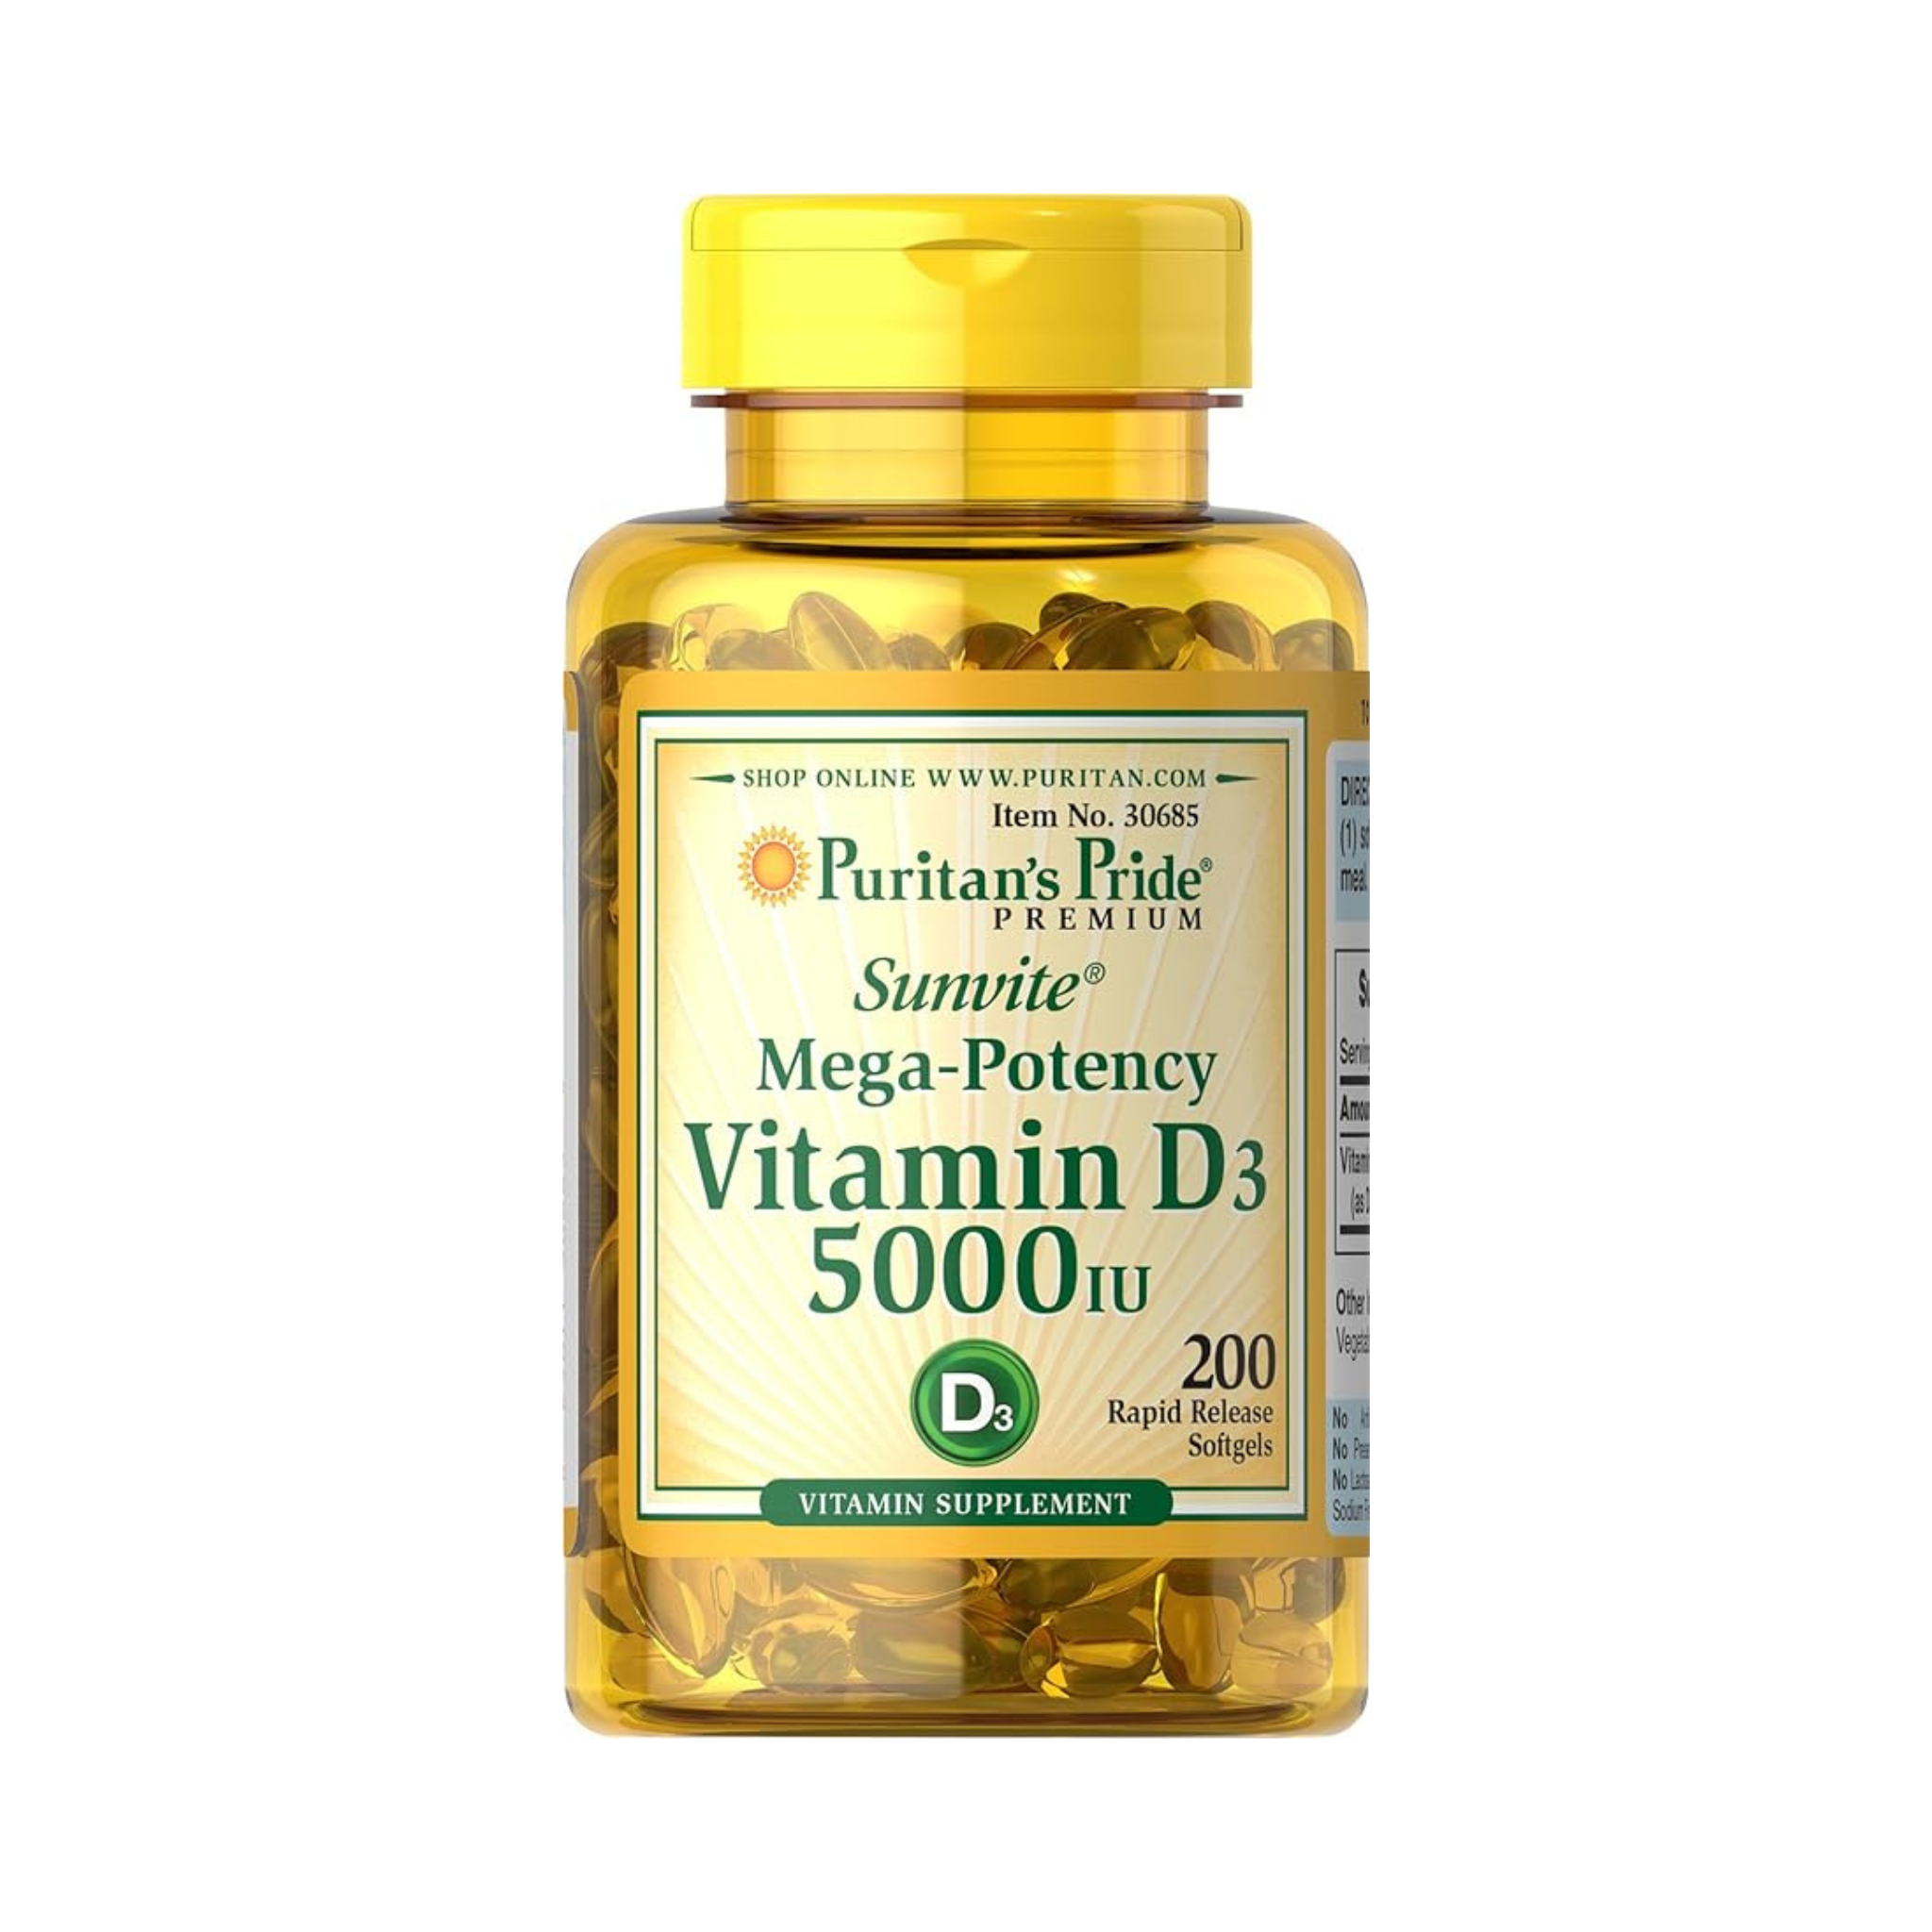 200-Count Puritan's Pride Vitamin D3 5000 IU Softgels Supplement